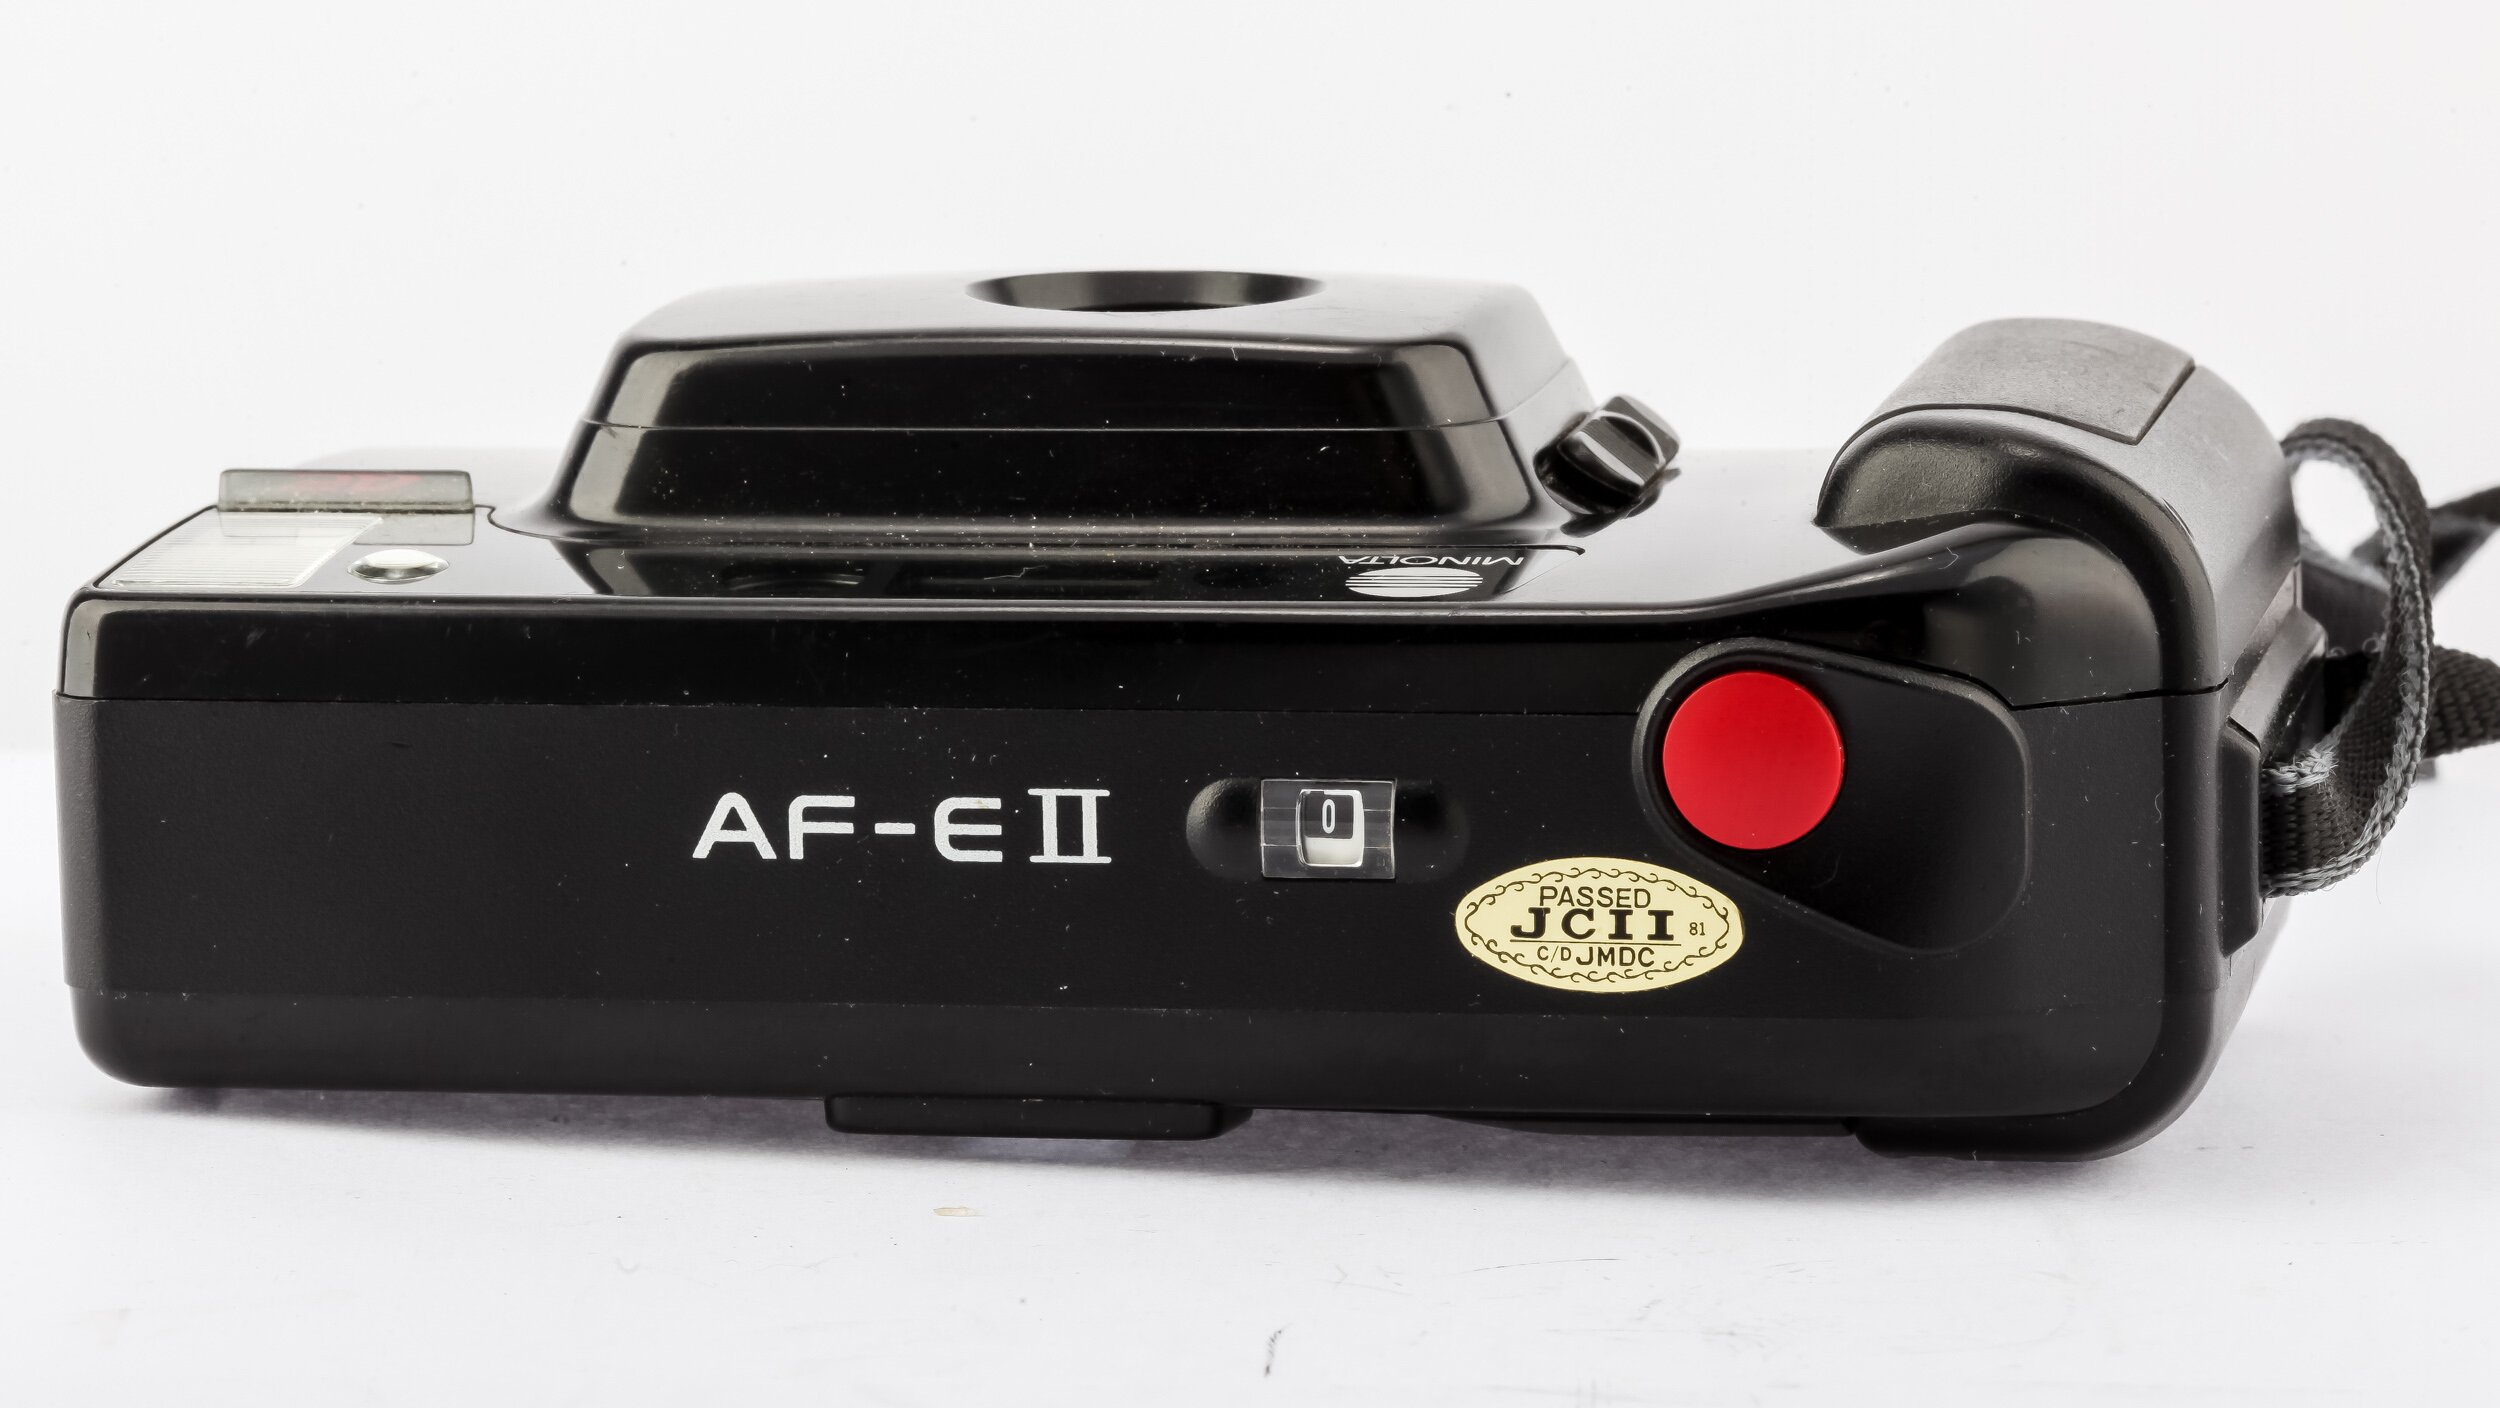 Minolta AF-E II AF Analoge Kompaktkamera